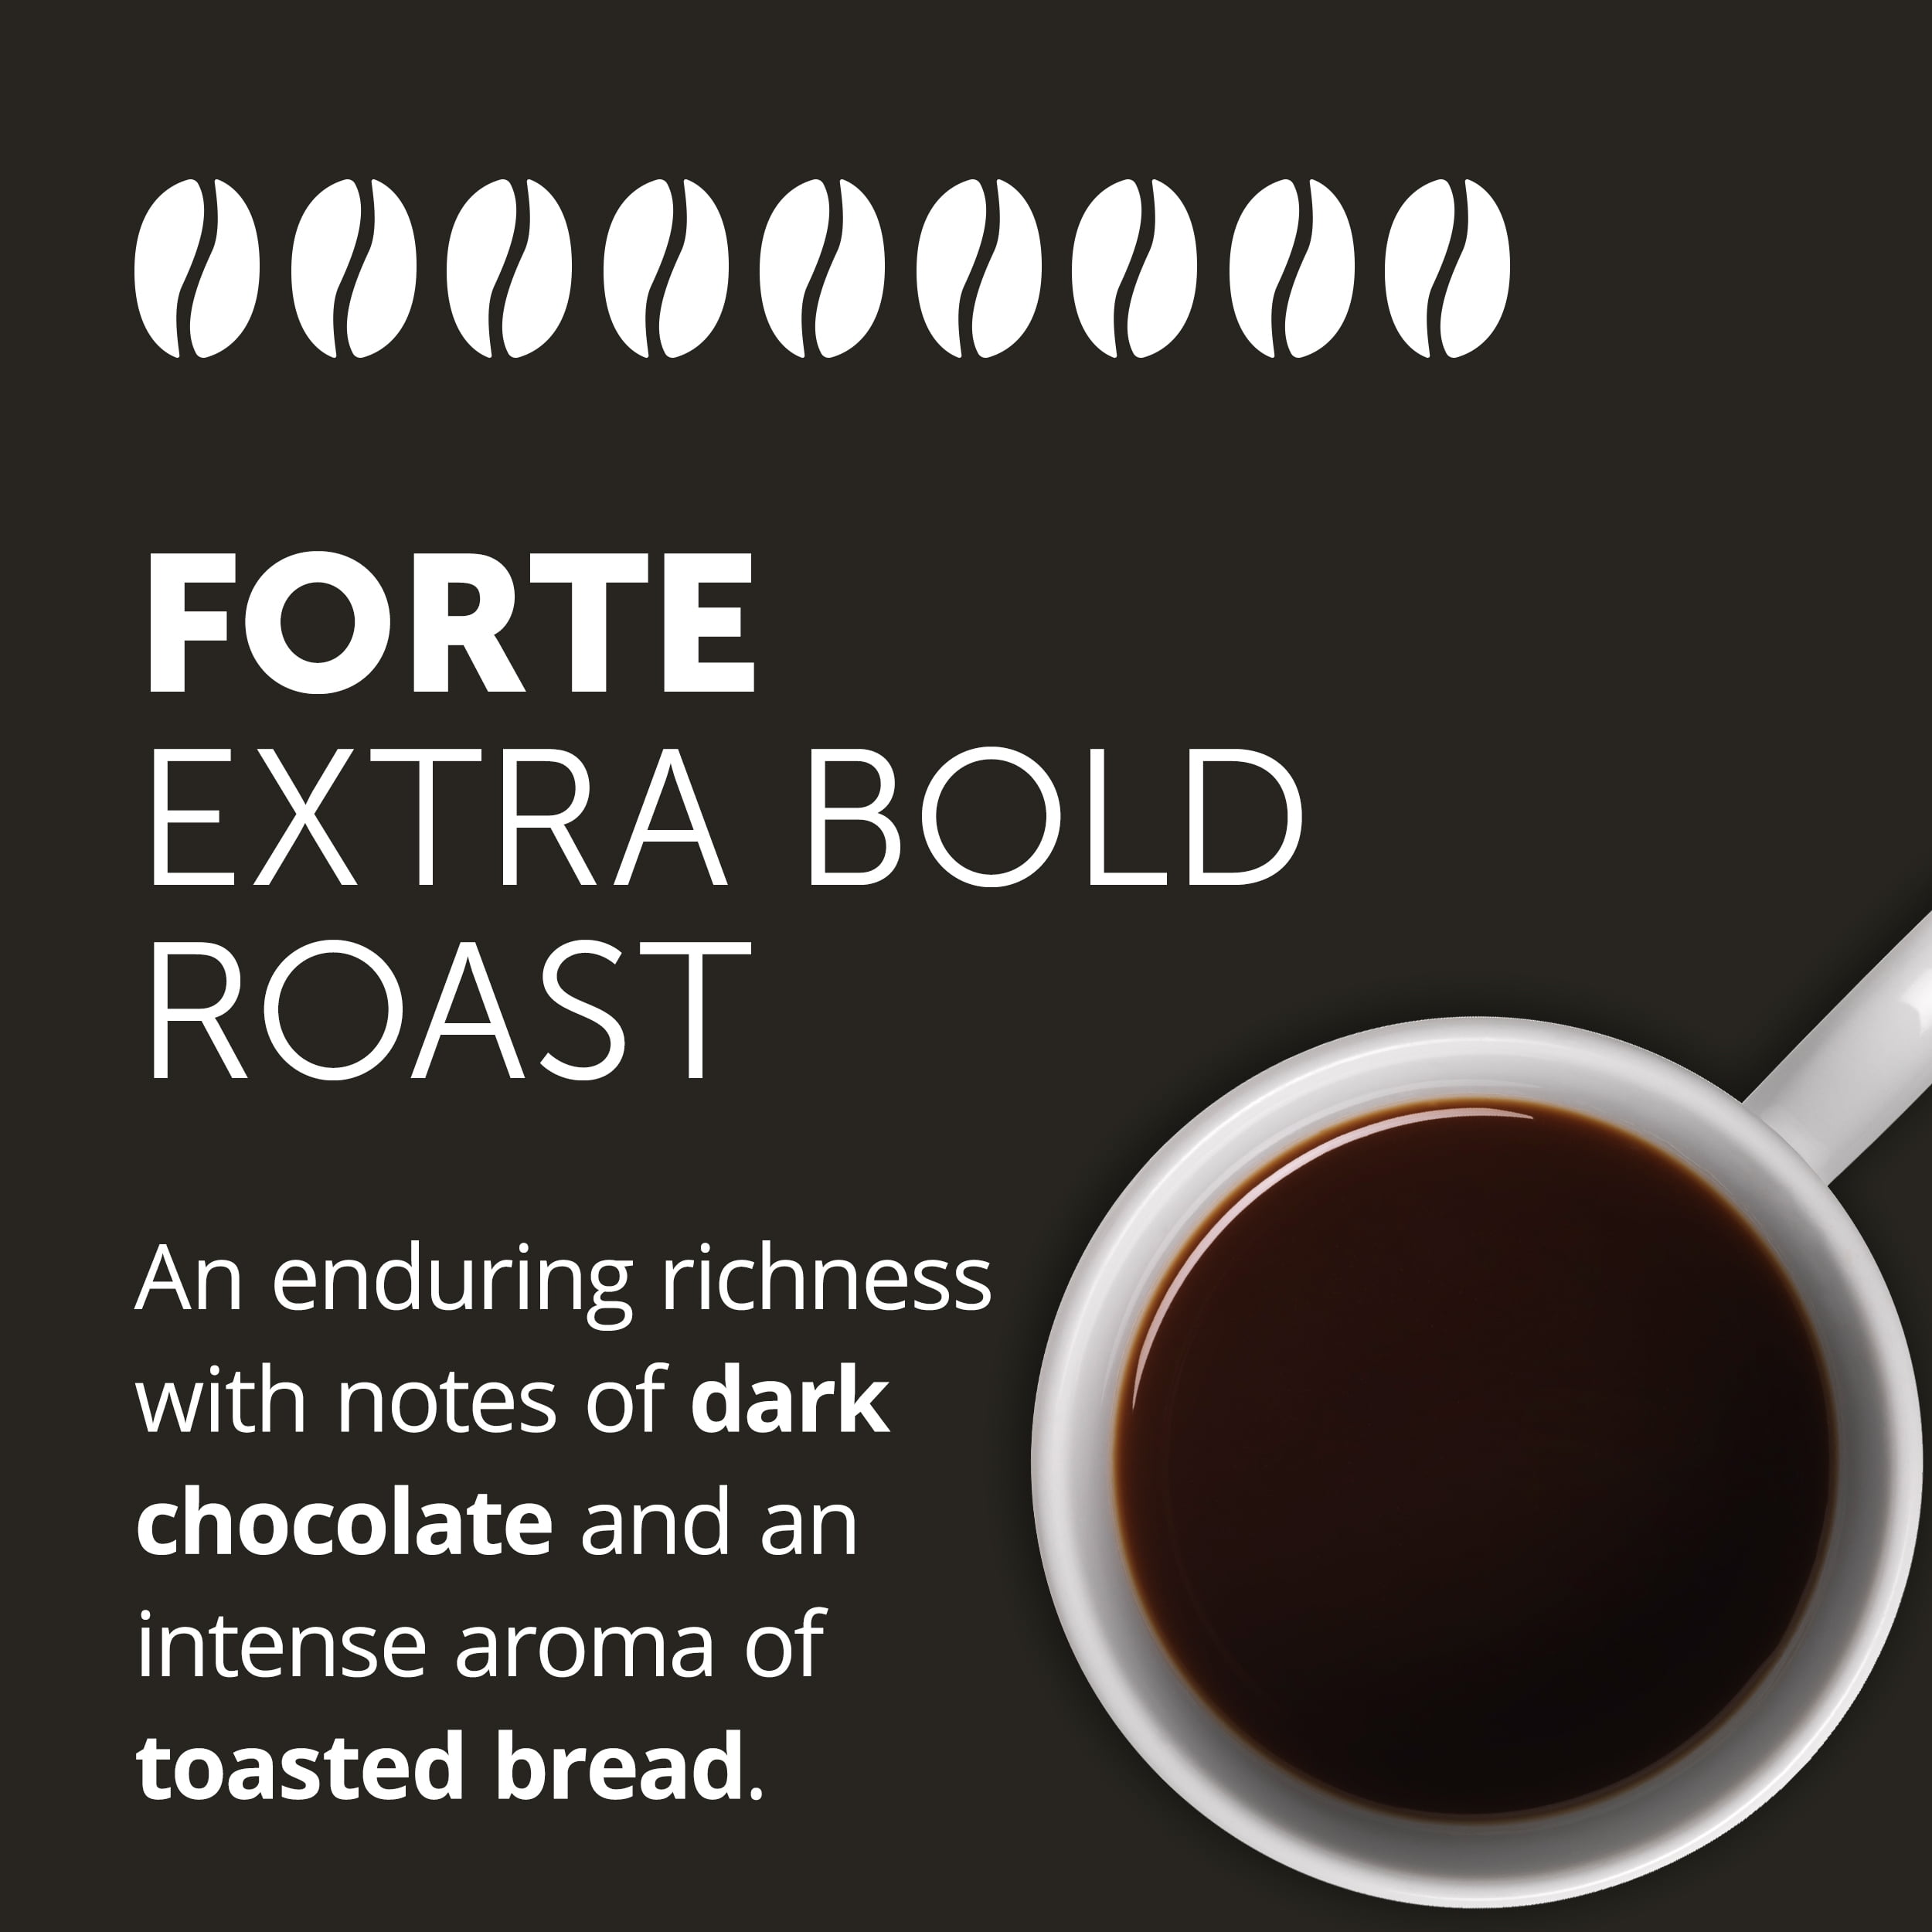 illy Ground Coffee Drip Forte Extra Bold Roast, 8.8 Oz 